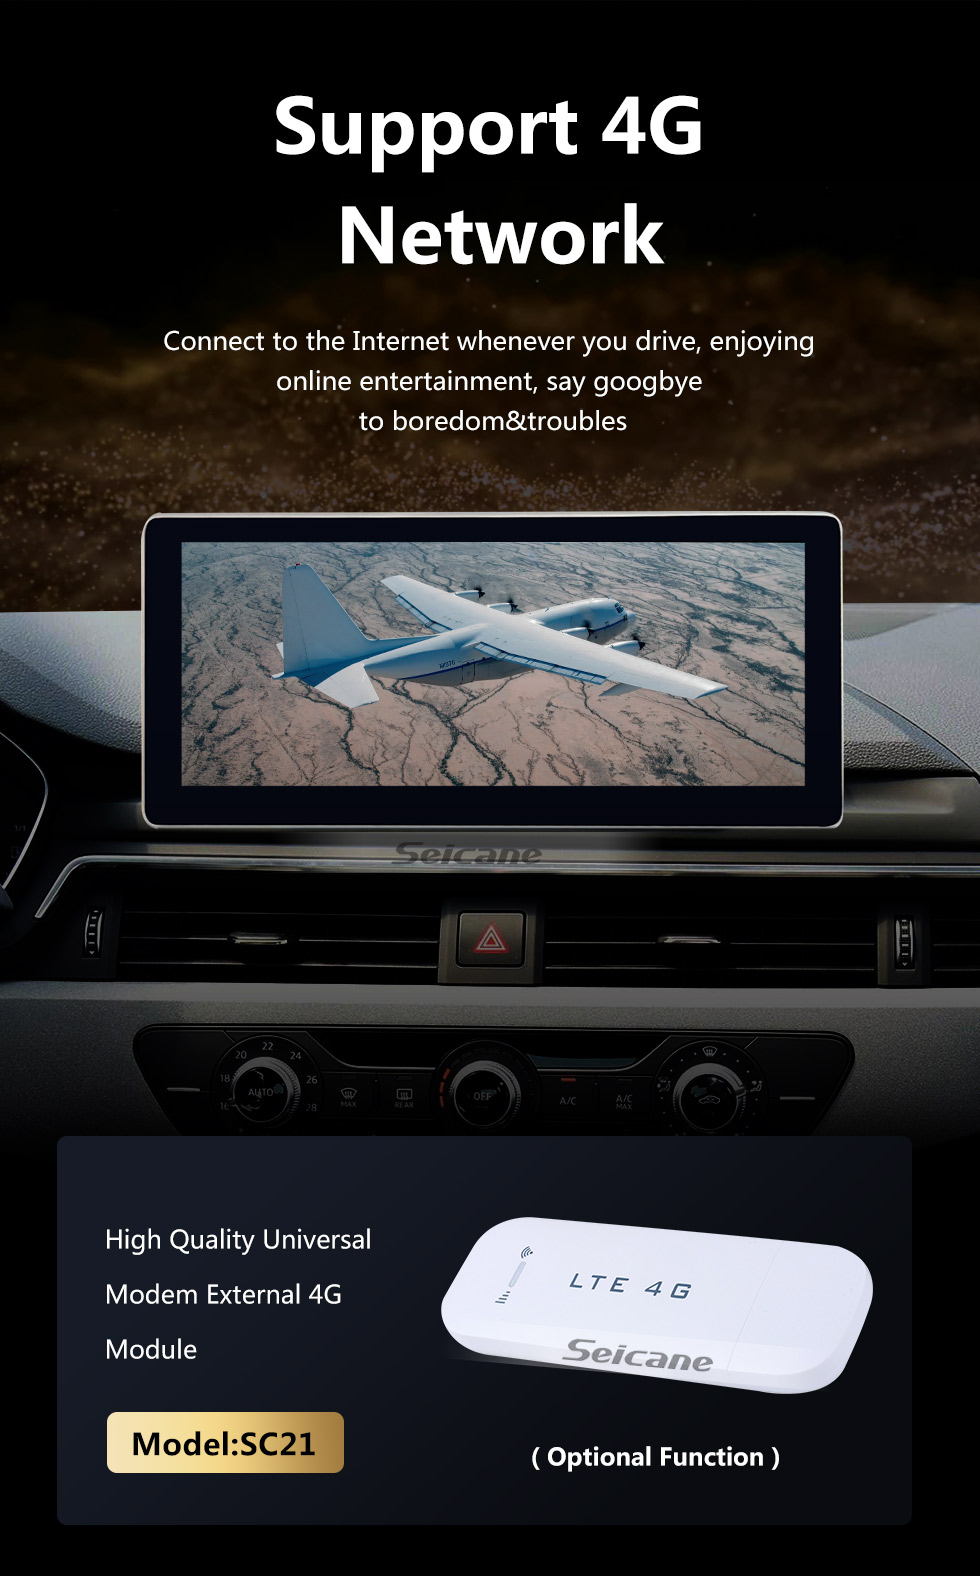 Seicane 10,25-дюймовый Android 10.0 для Mercedes-Benz S-Class RHD 2006-2013 Радио GPS-навигационная система с сенсорным экраном HD Поддержка Bluetooth Carplay